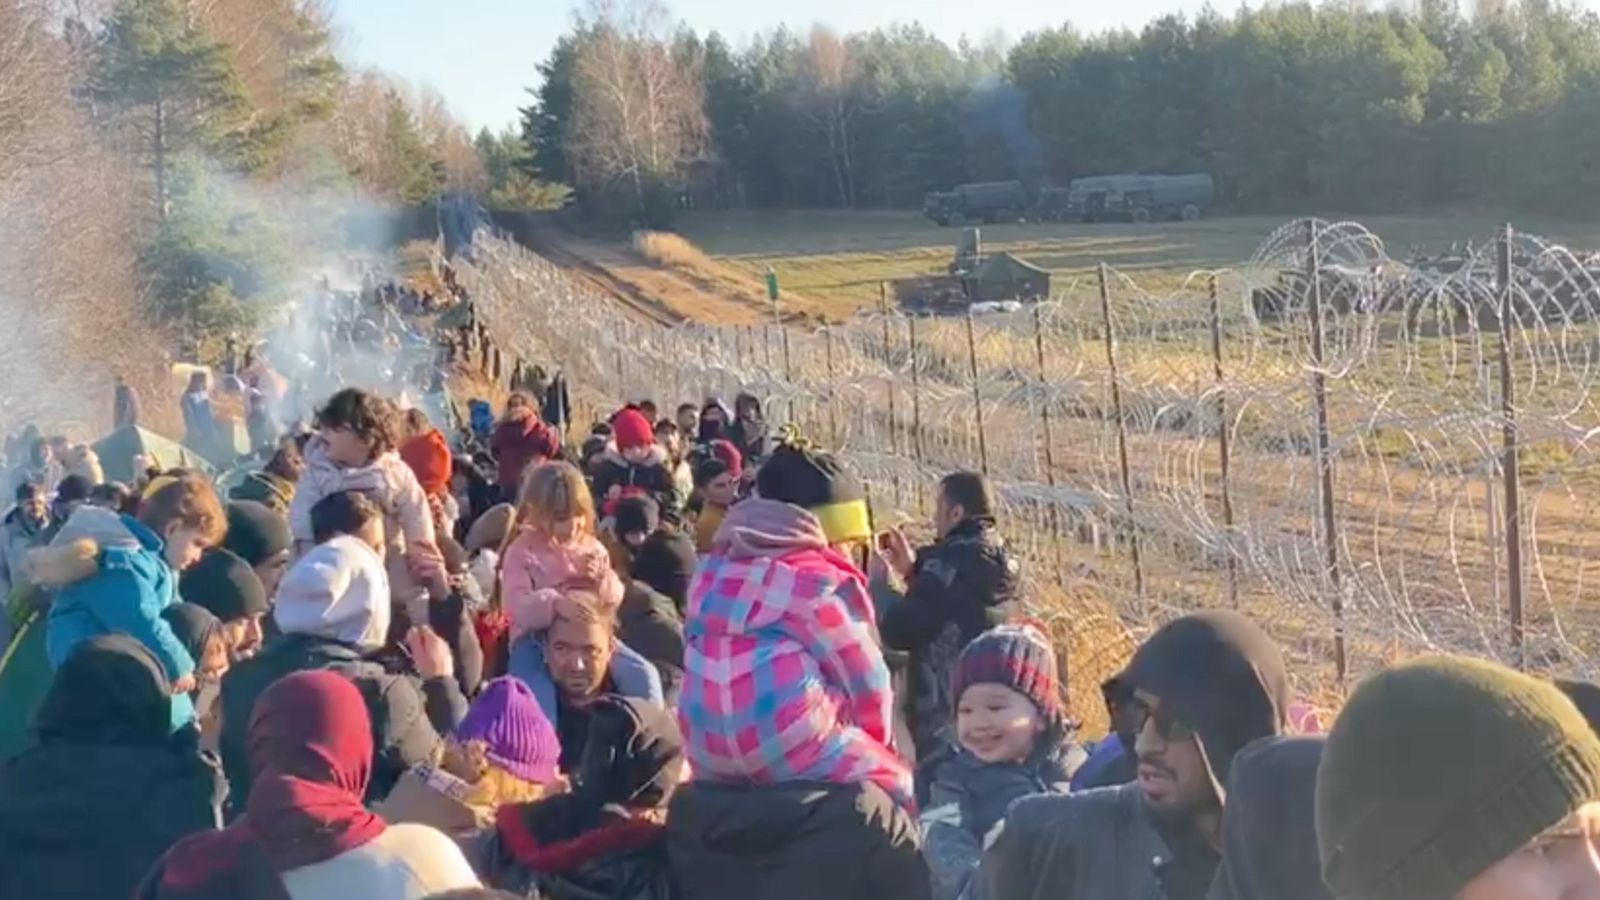 Apa yang menyebabkan krisis migran di perbatasan Belarusia-Polandia?  |  Berita Dunia